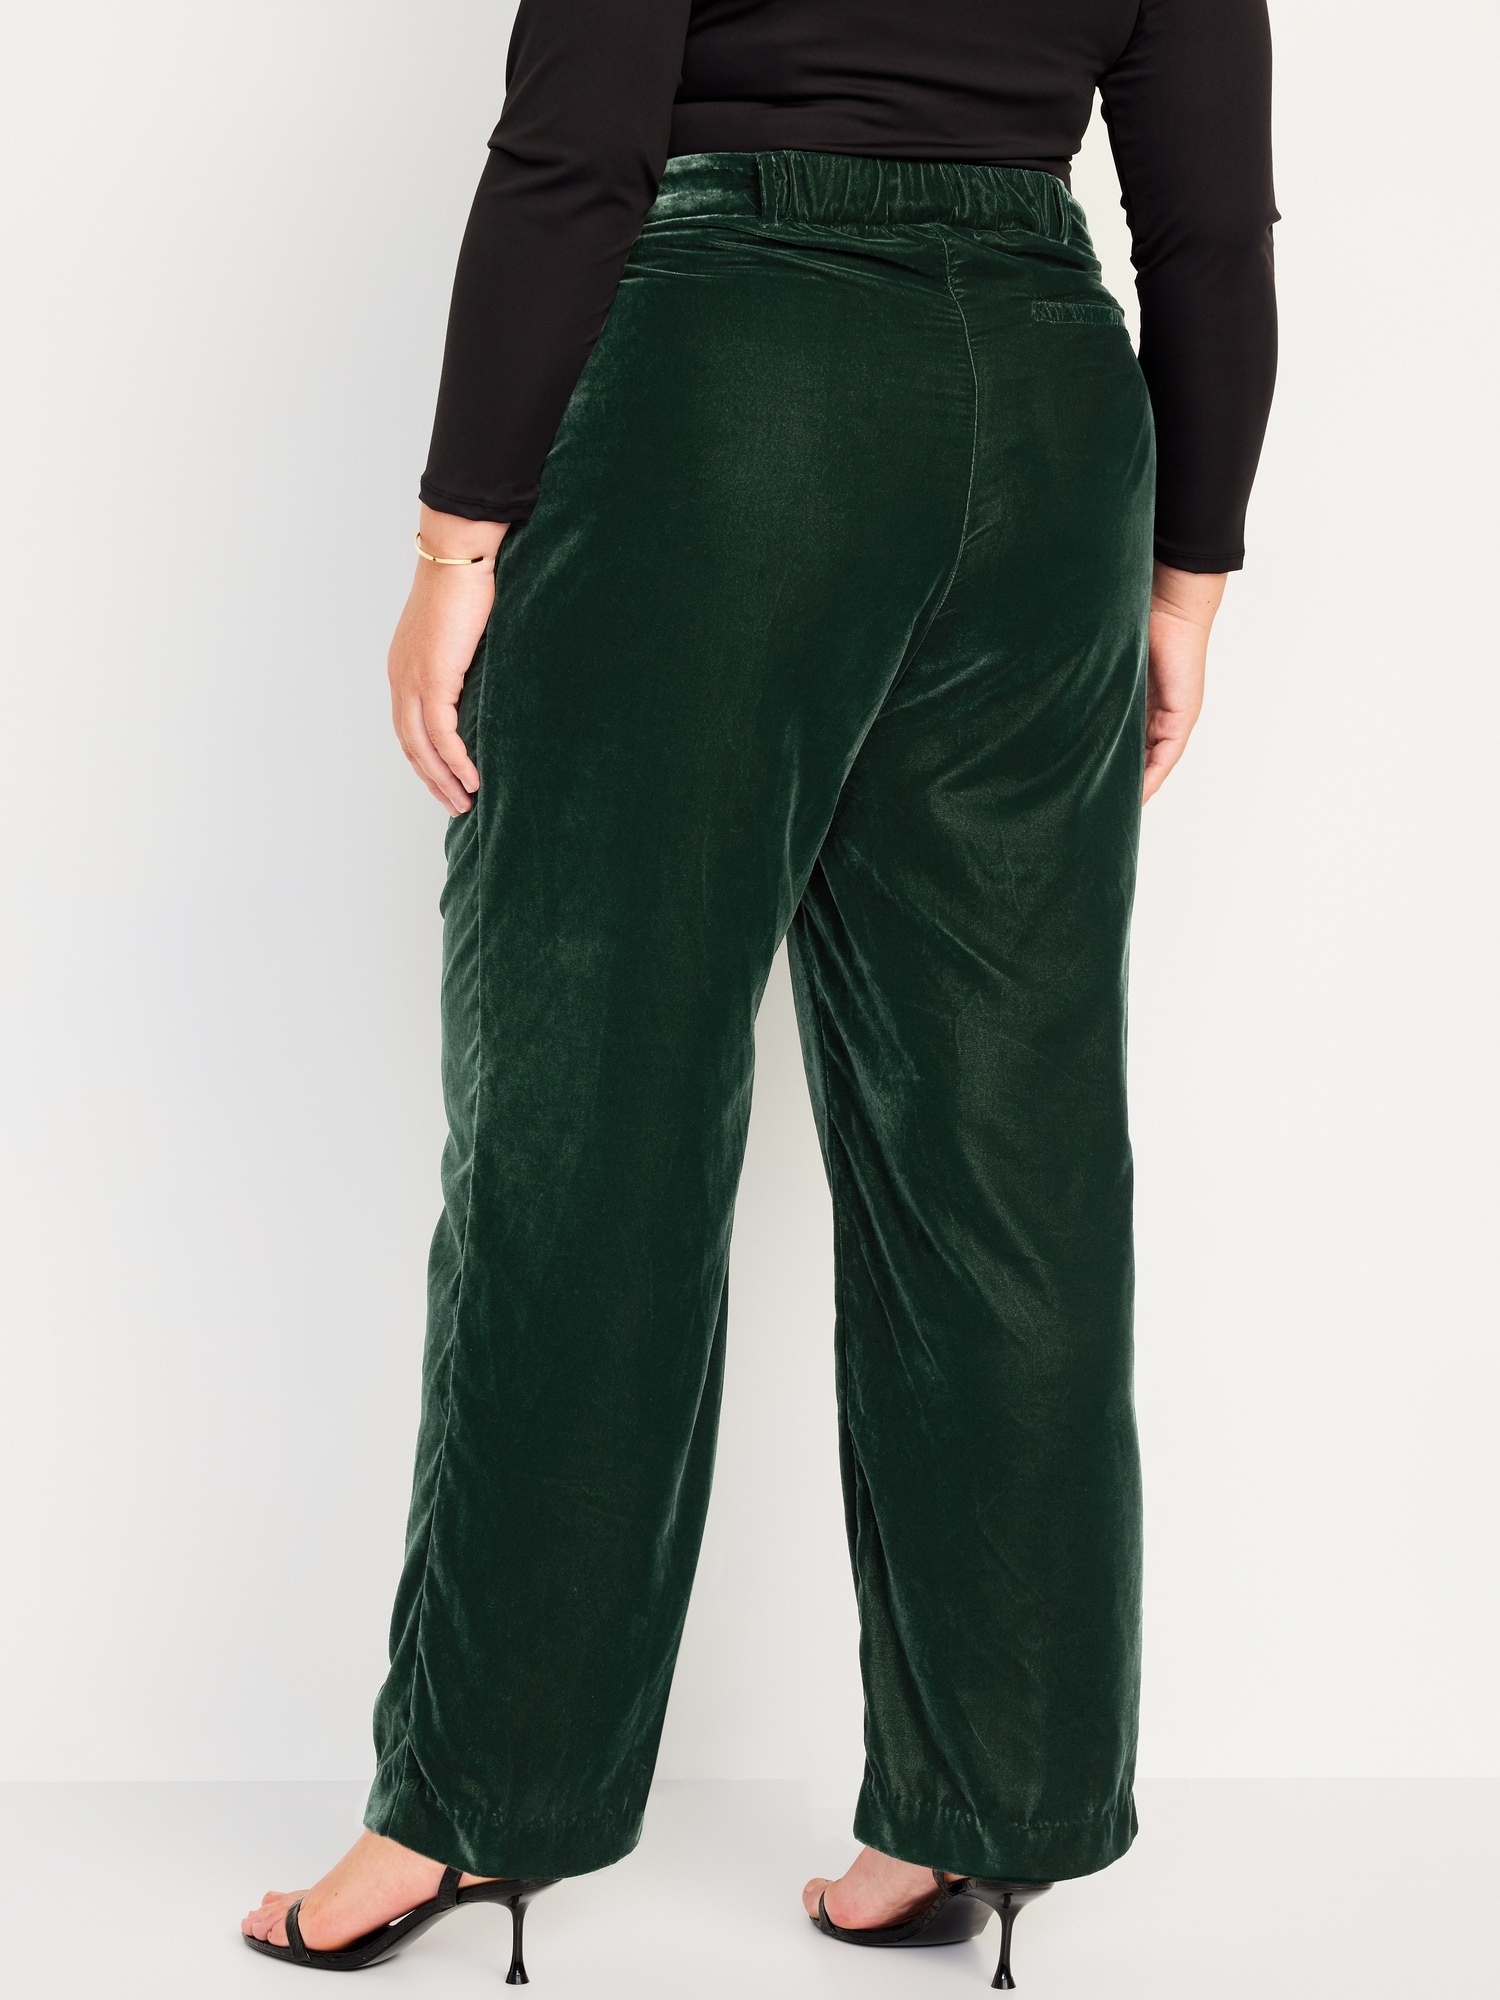 Plus Size Velvet Pants for Women Elastic Waist Cuff Casual Pant